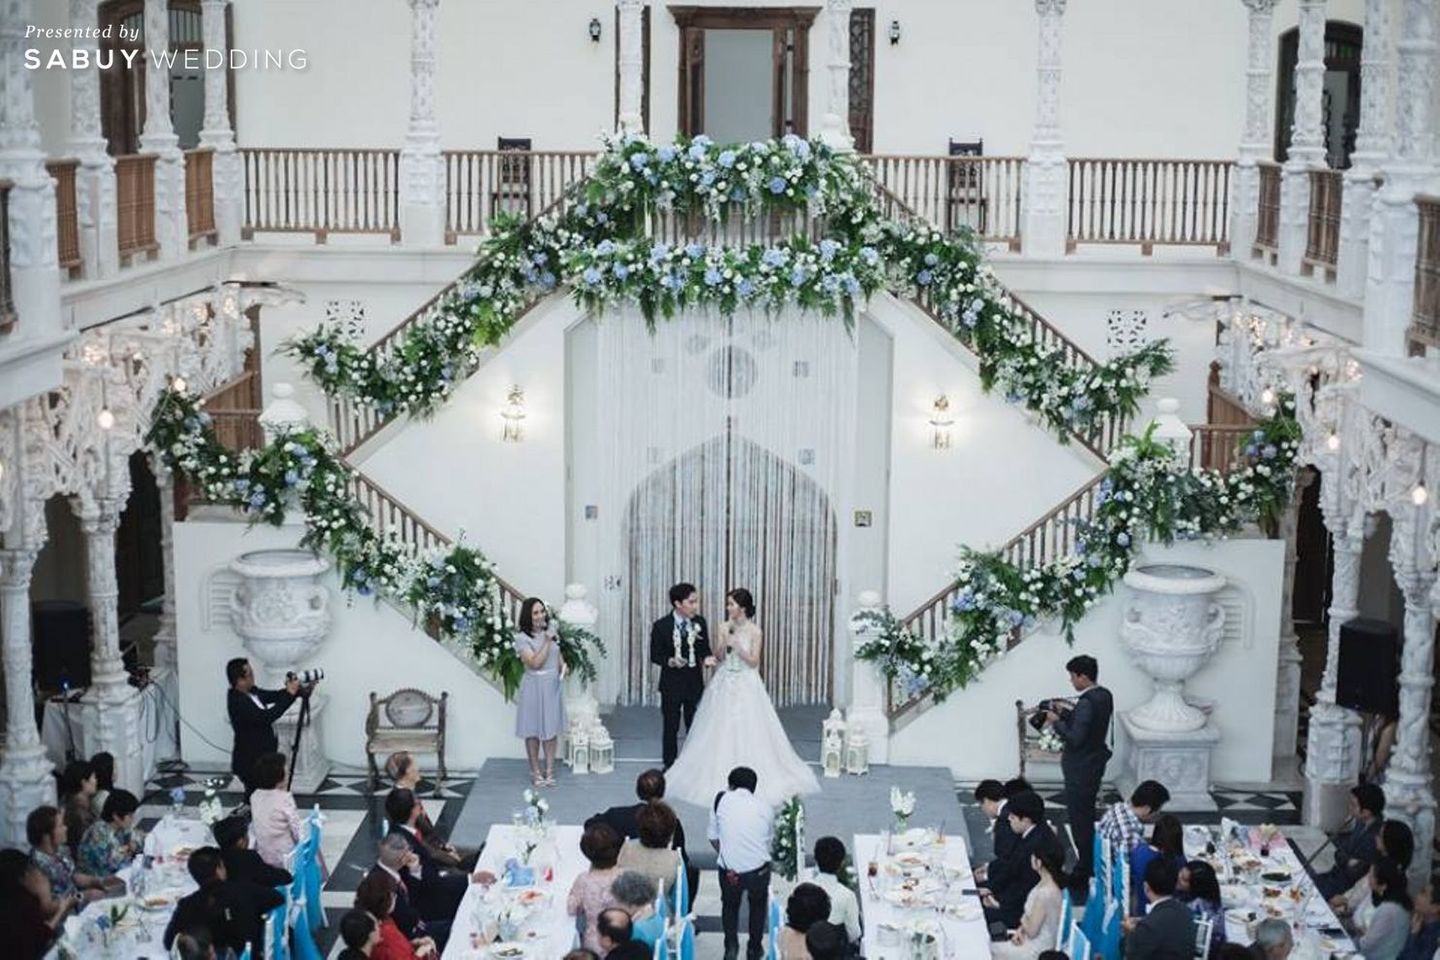 งานแต่งงาน,ธีมงานแต่ง,จัดดอกไม้งานแต่ง,ตกแต่งงานแต่ง,สถานที่แต่งงาน,สถานที่จัดงานแต่งงาน,Benedict Studio,Primmrose Wedding Planner,บ่าวสาว,พิธีกรงานแต่ง,Vas Wedding MC&Organizer 2 ธีมงานแต่งต่างสไตล์ ในสถานที่แต่งงานคลาสสิก by Primmrose Wedding Planner